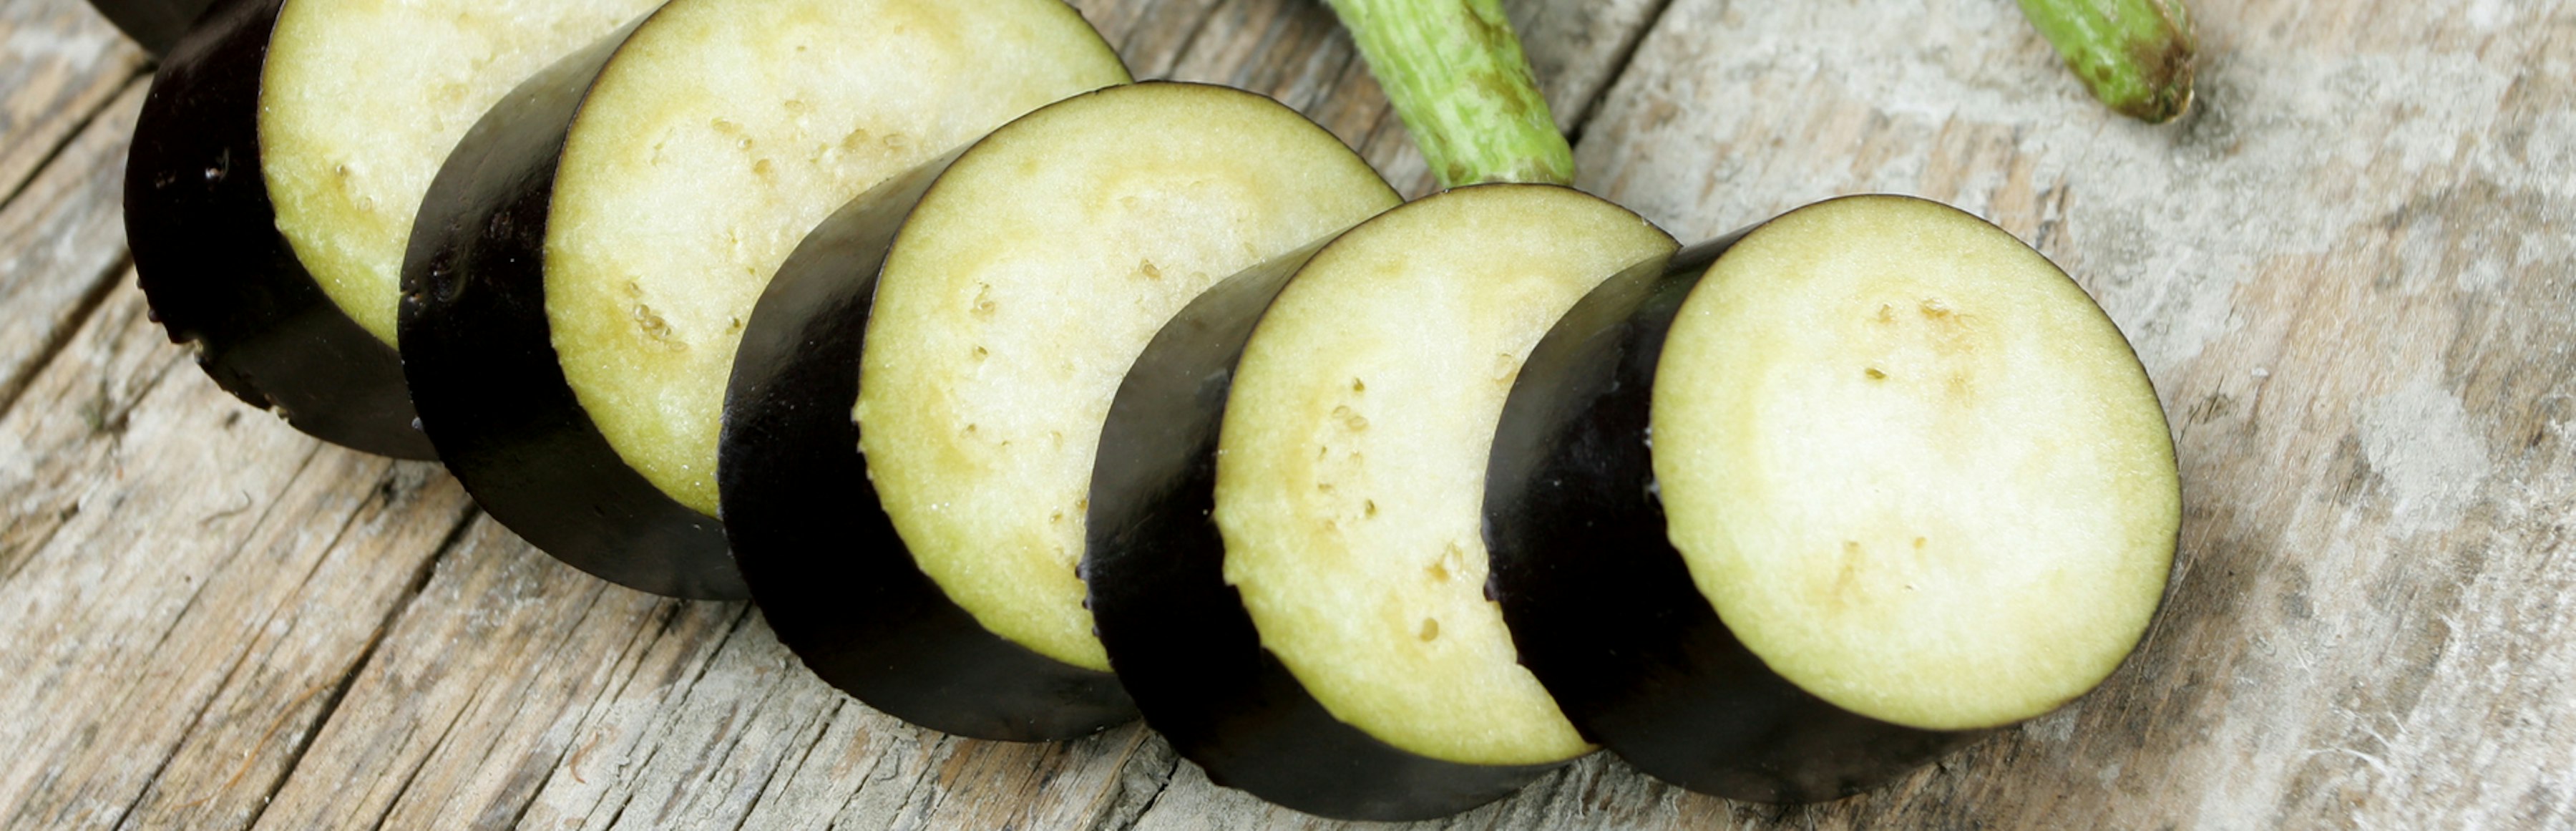 Health Eggplant Recipes